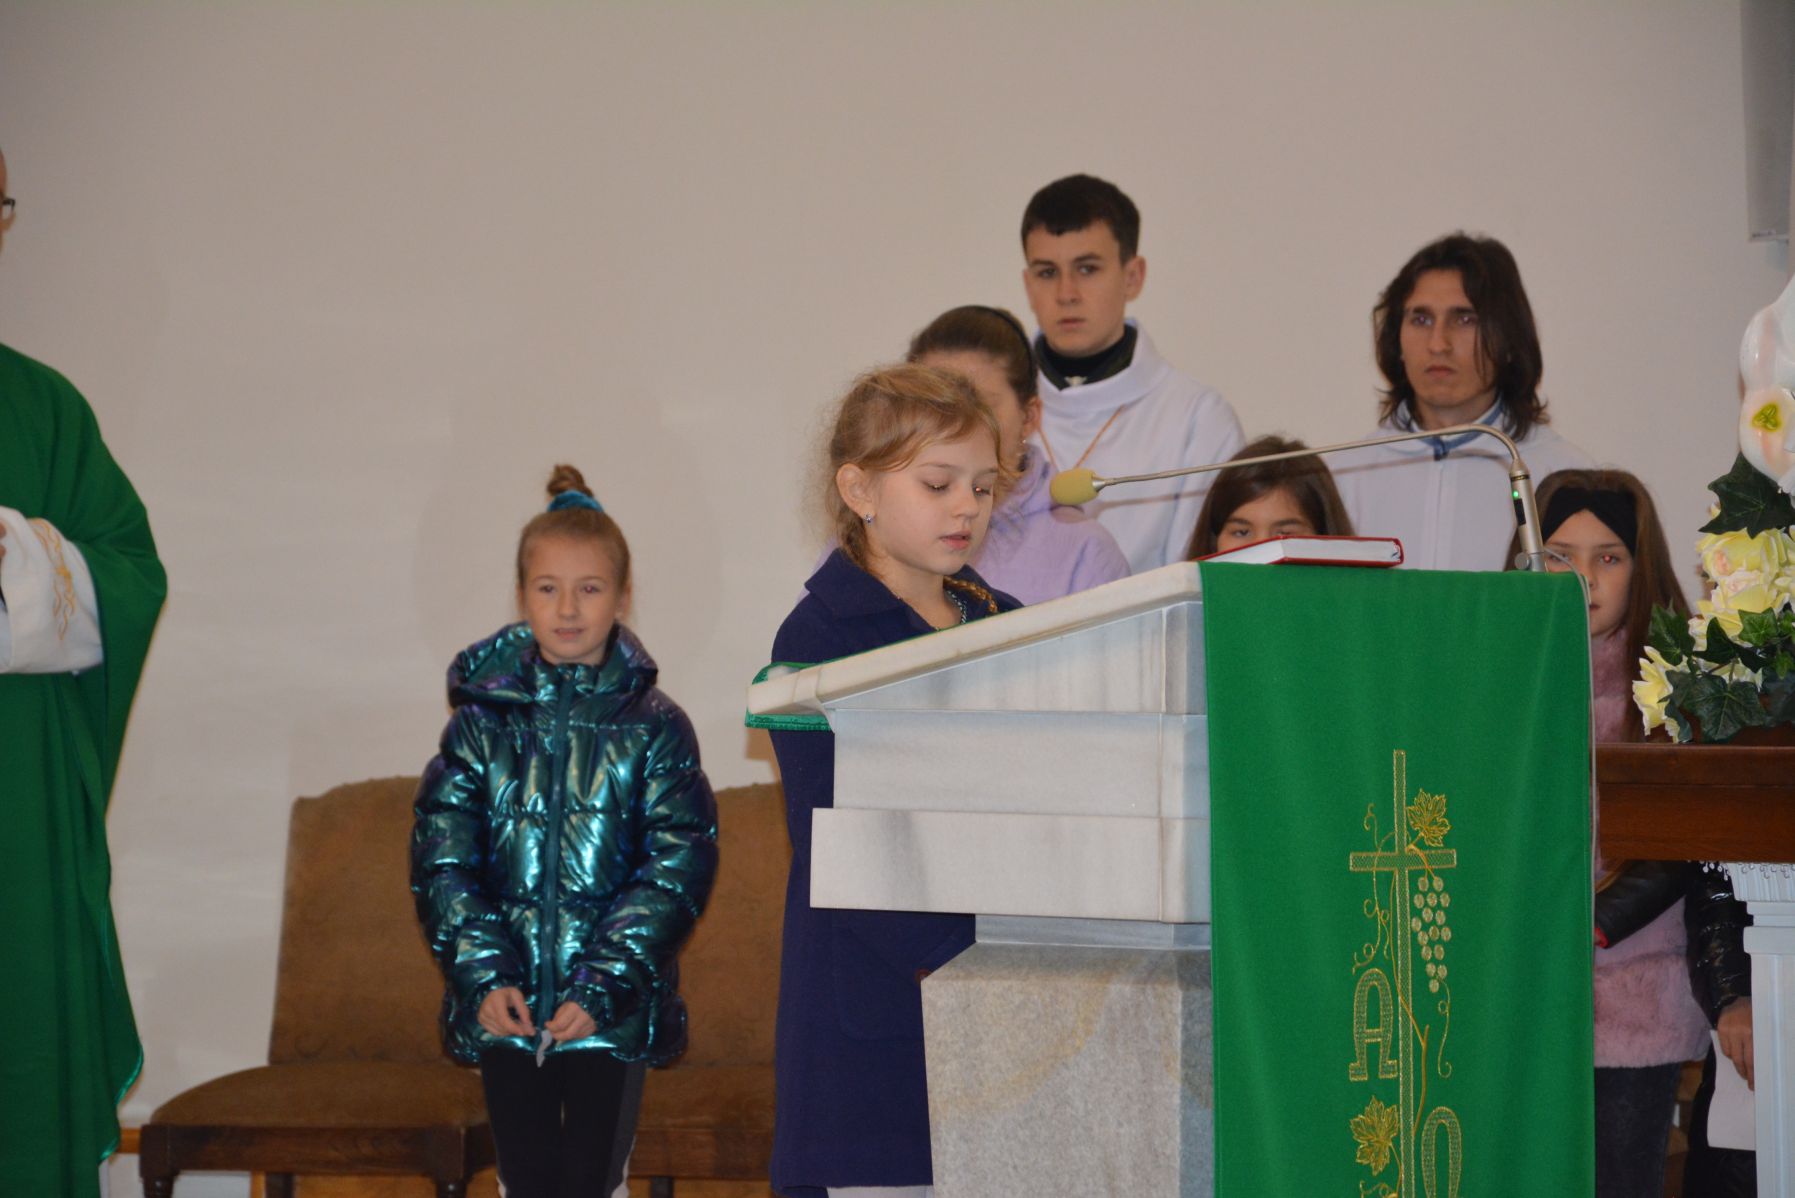 Wnętrze kościoła, dziewczynka czyta z ambony, w tle inne dzieci oraz dwóch ministrantów